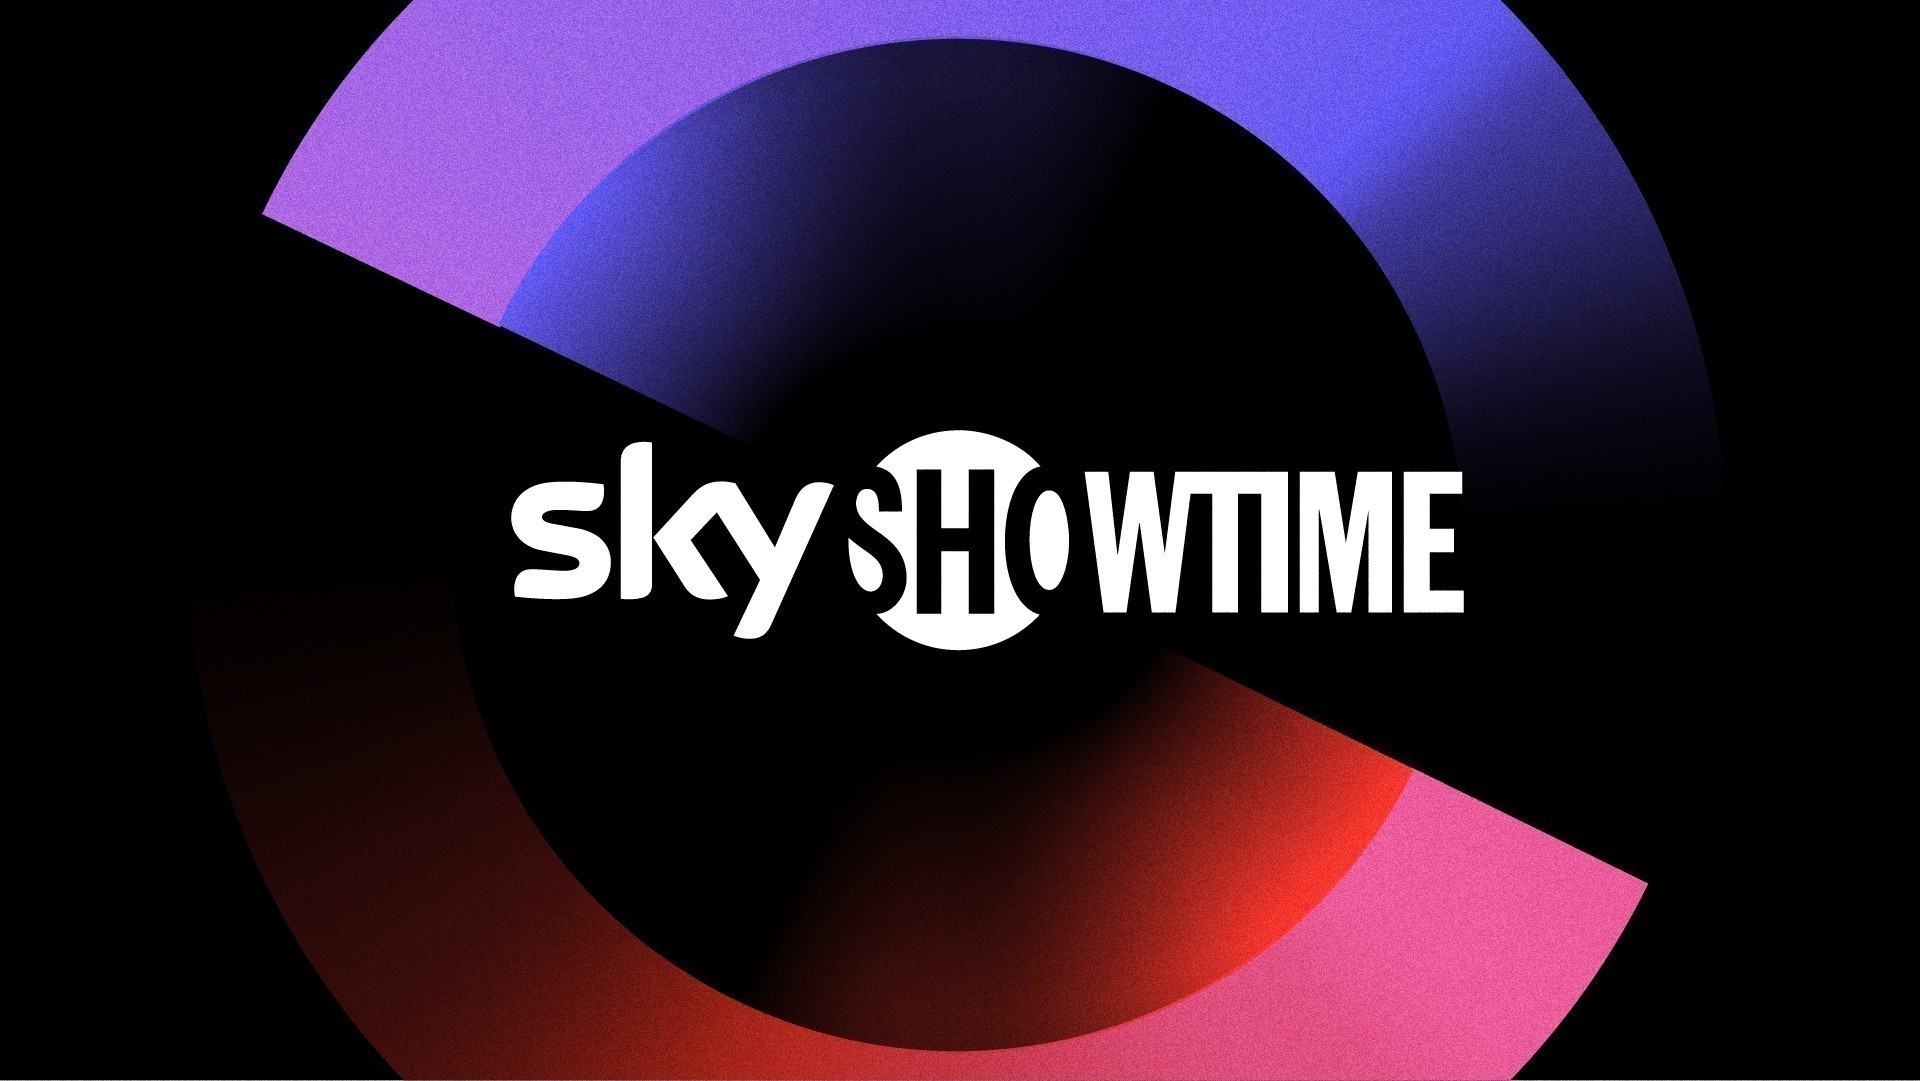 SkyShowtime ofrecerá grandes éxitos hasta fin de año.  Fecha de estreno de la película Super Mario Bros.  y Transformers 7 en SkyShowtime.